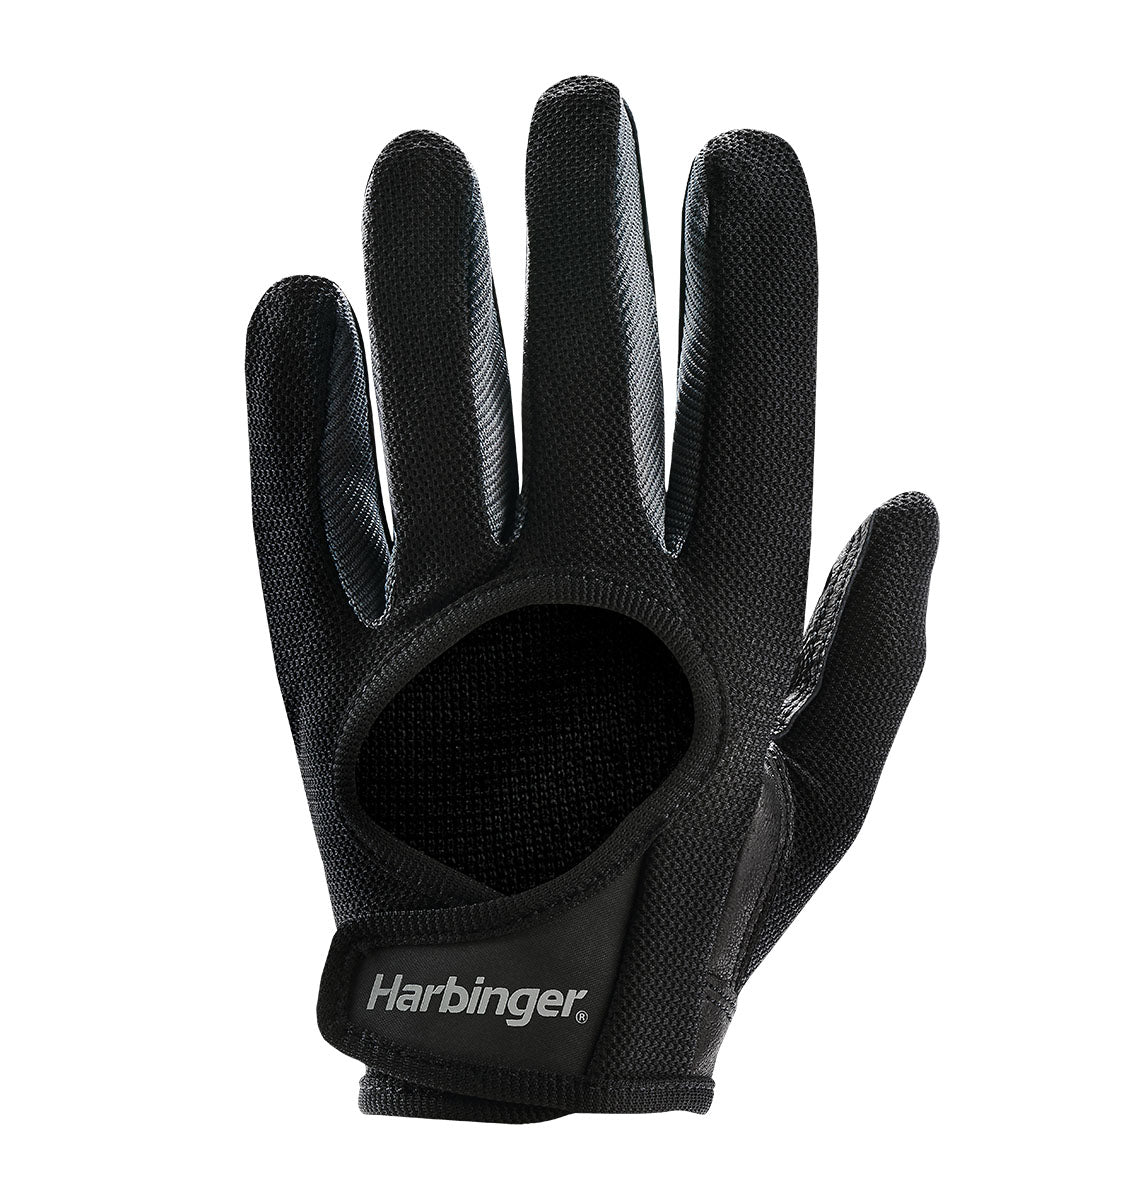 Harbinger Power Protect Gloves - Women's - Black - 1